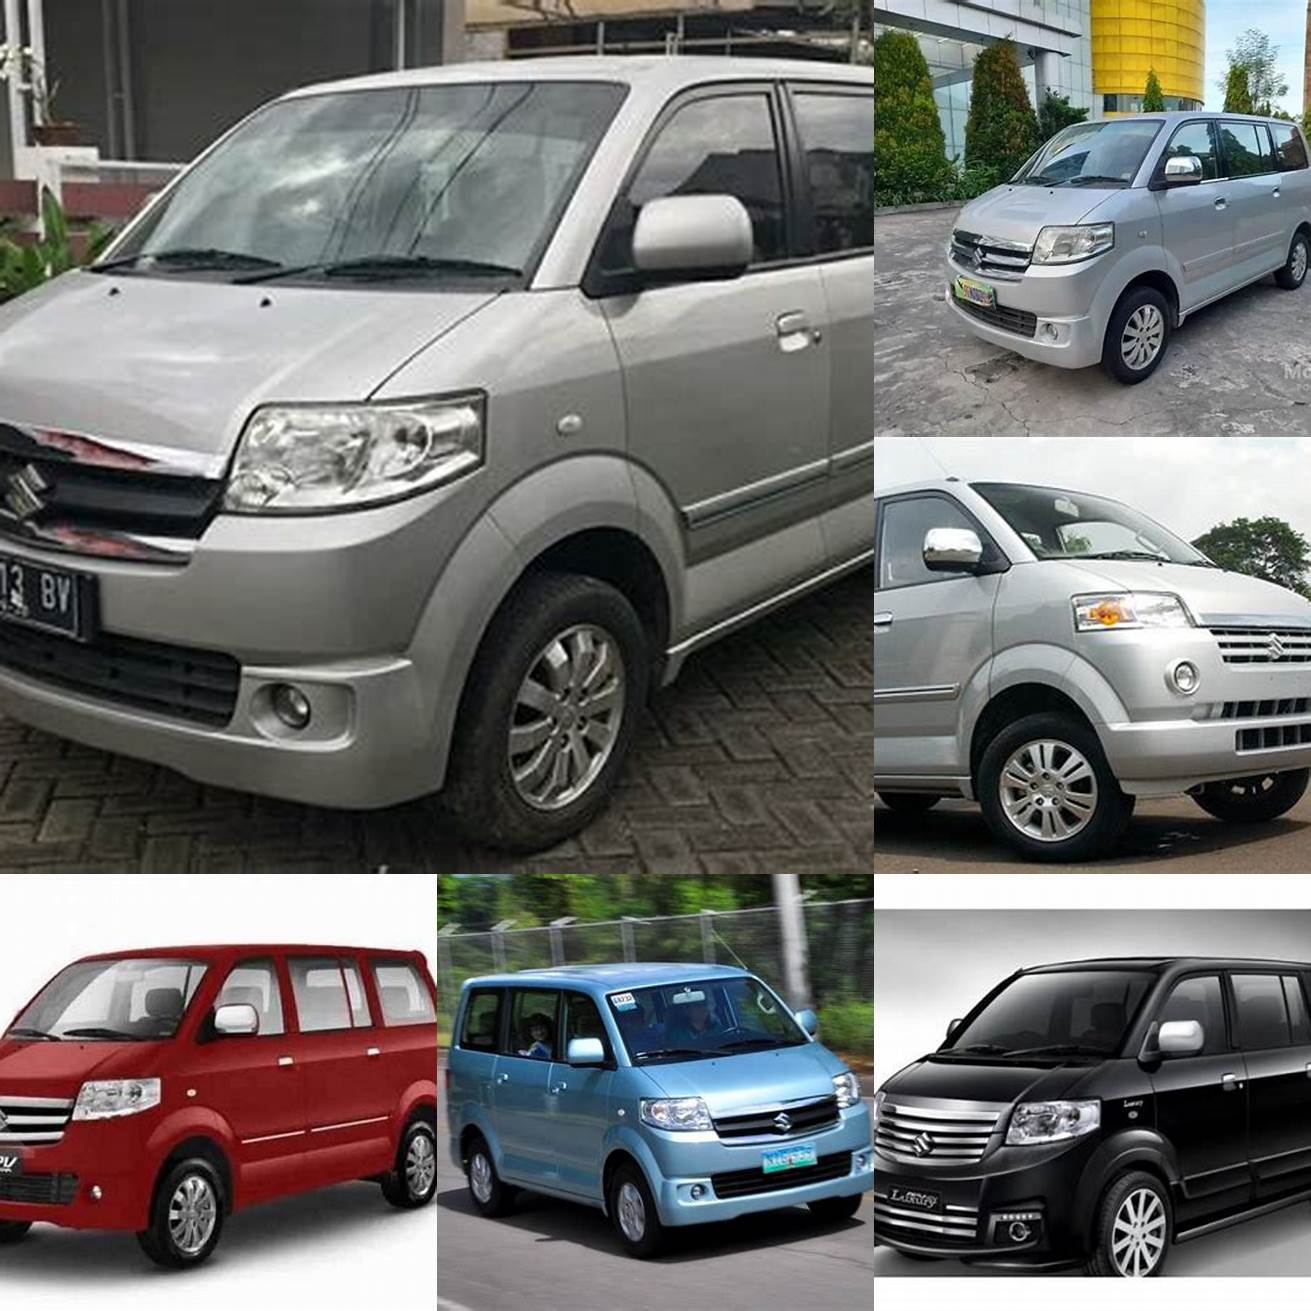 Harga mobil APV bekas tahun 2013 berkisar antara 80 - 130 juta rupiah